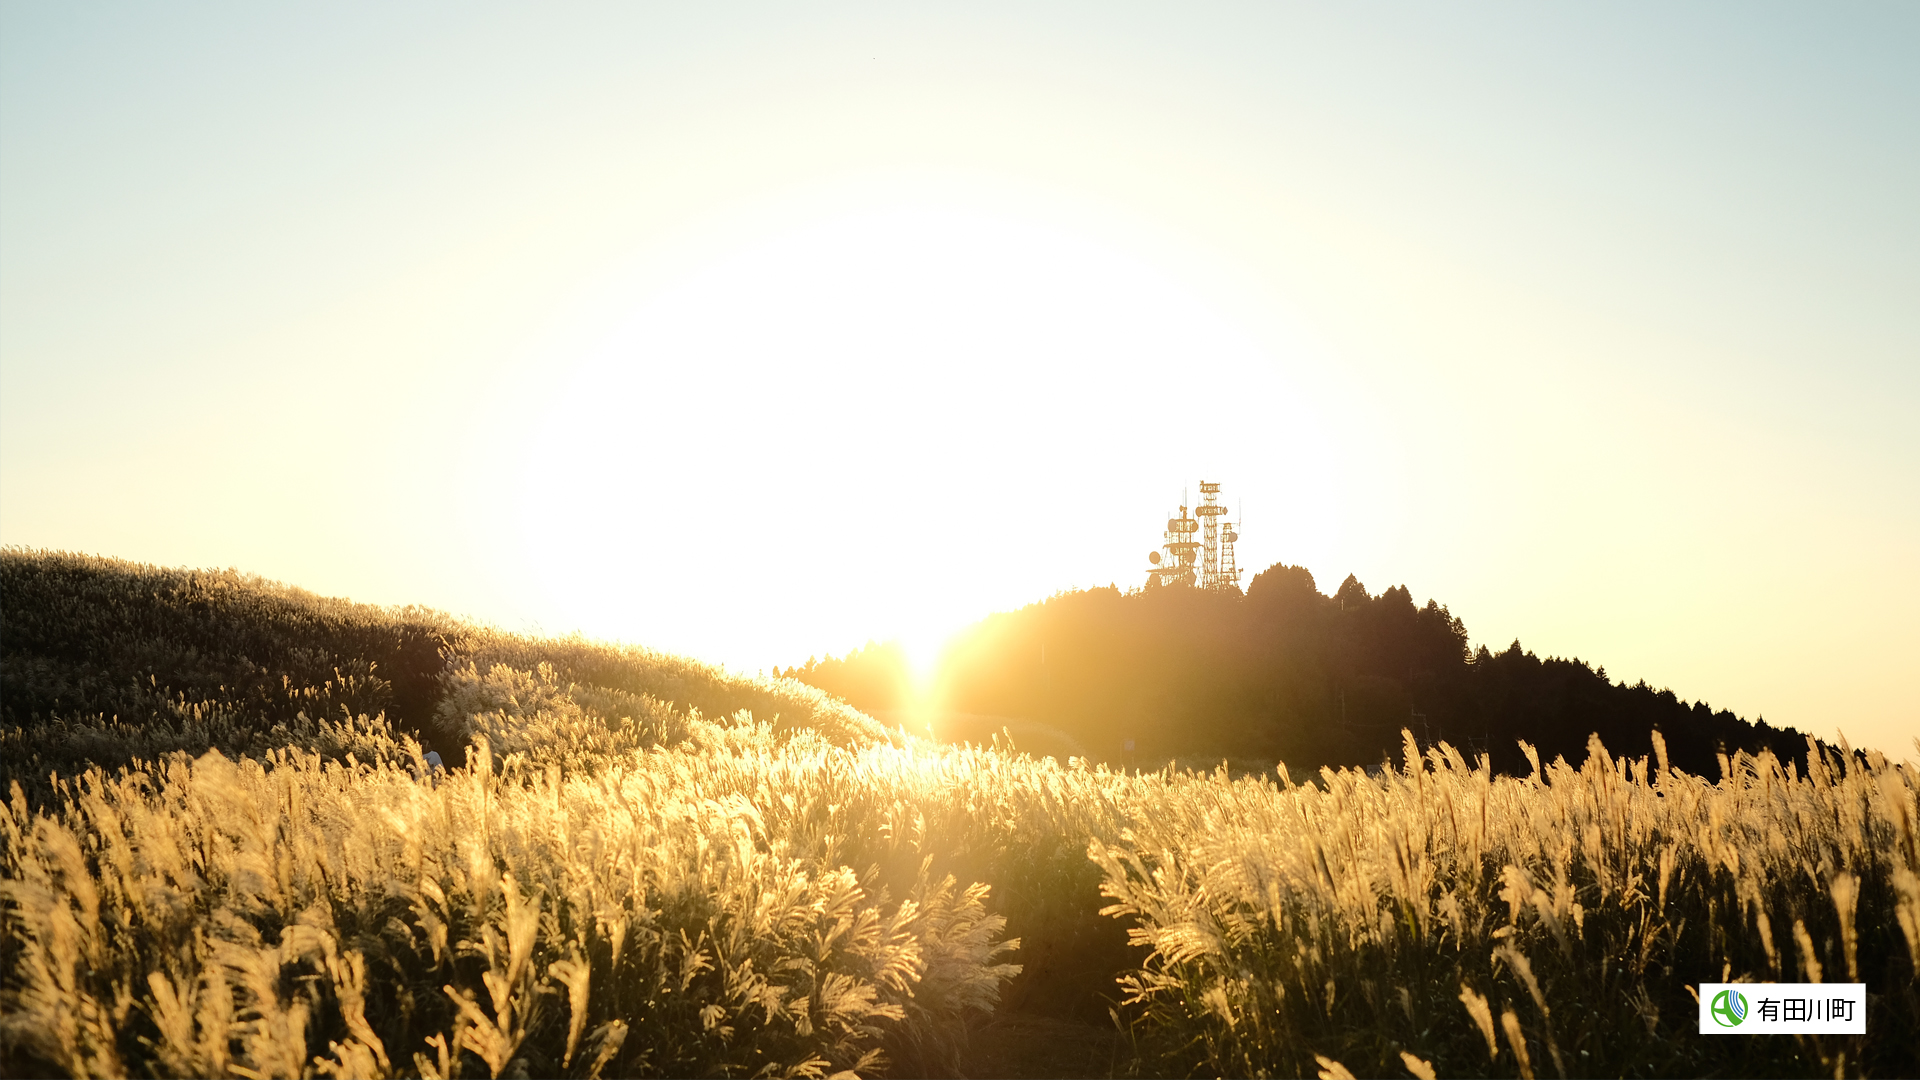 生石高原のススキが夕日に照らされて輝いている写真